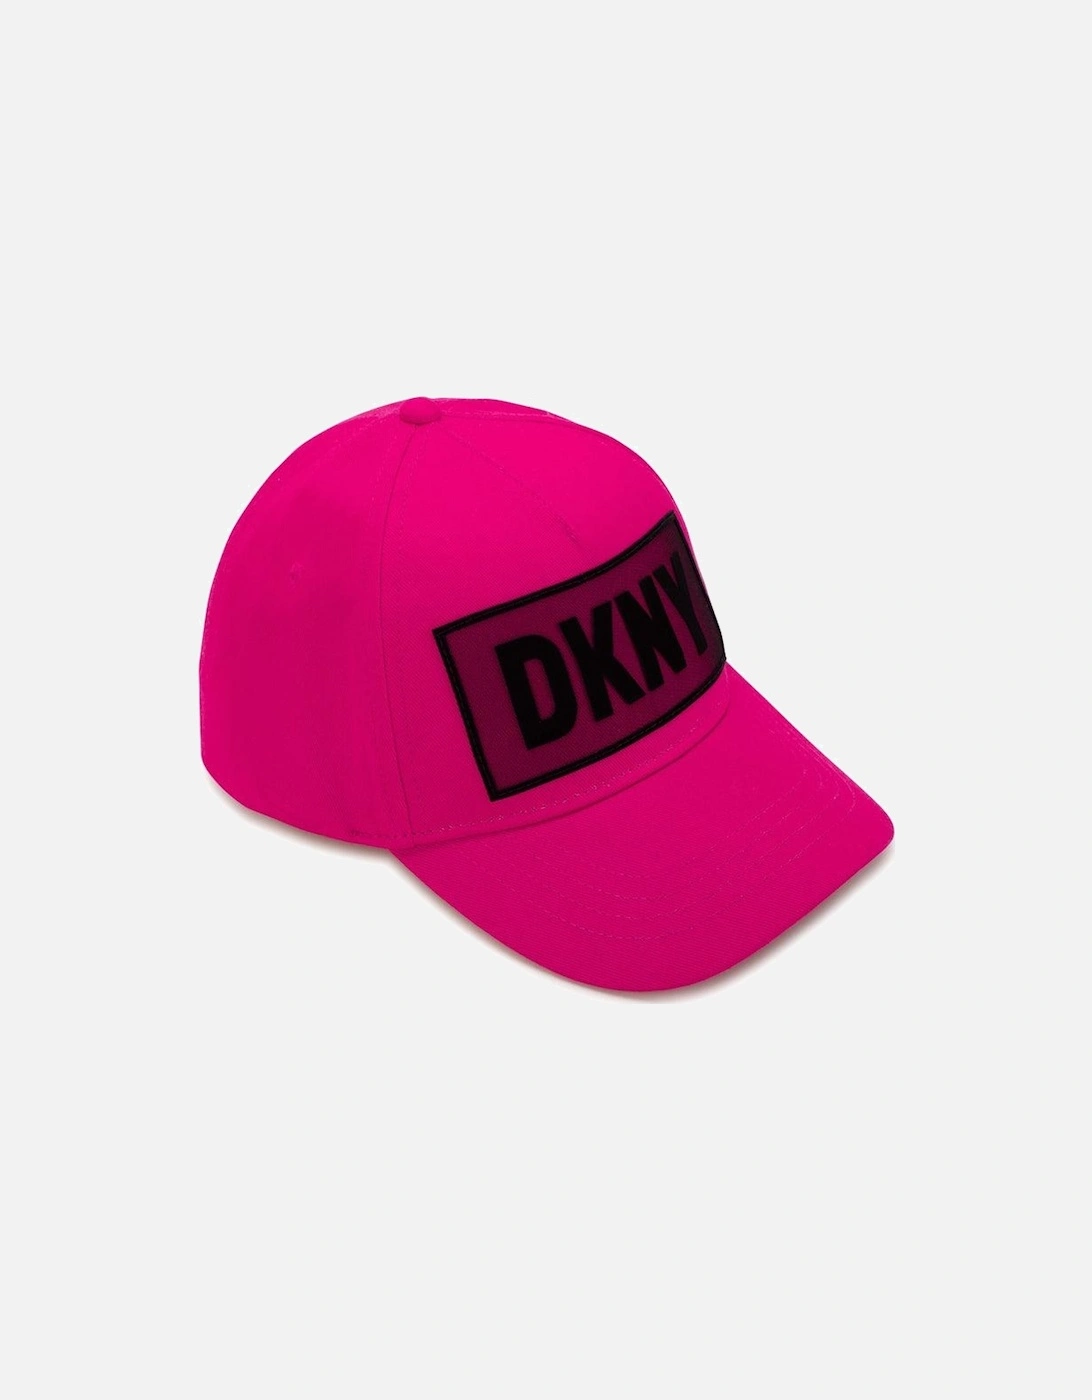 Girls Pink Logo Cap, 2 of 1